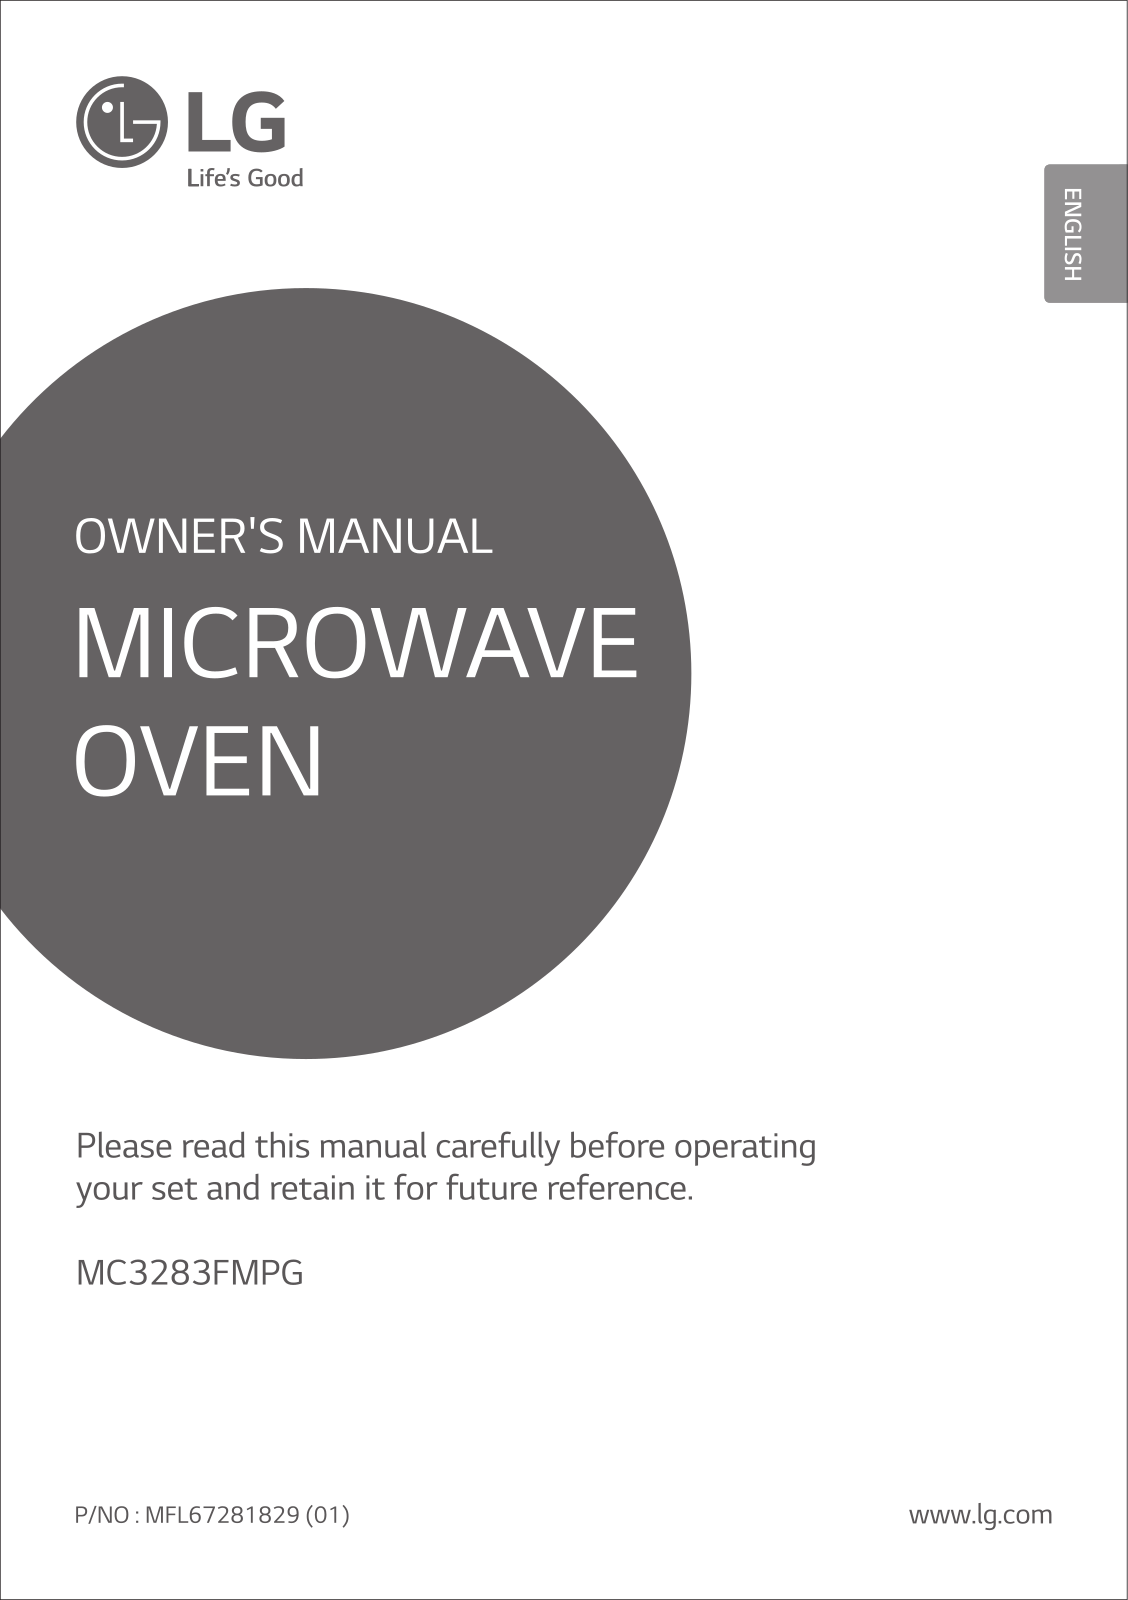 LG MC3283FMPG Owner’s Manual